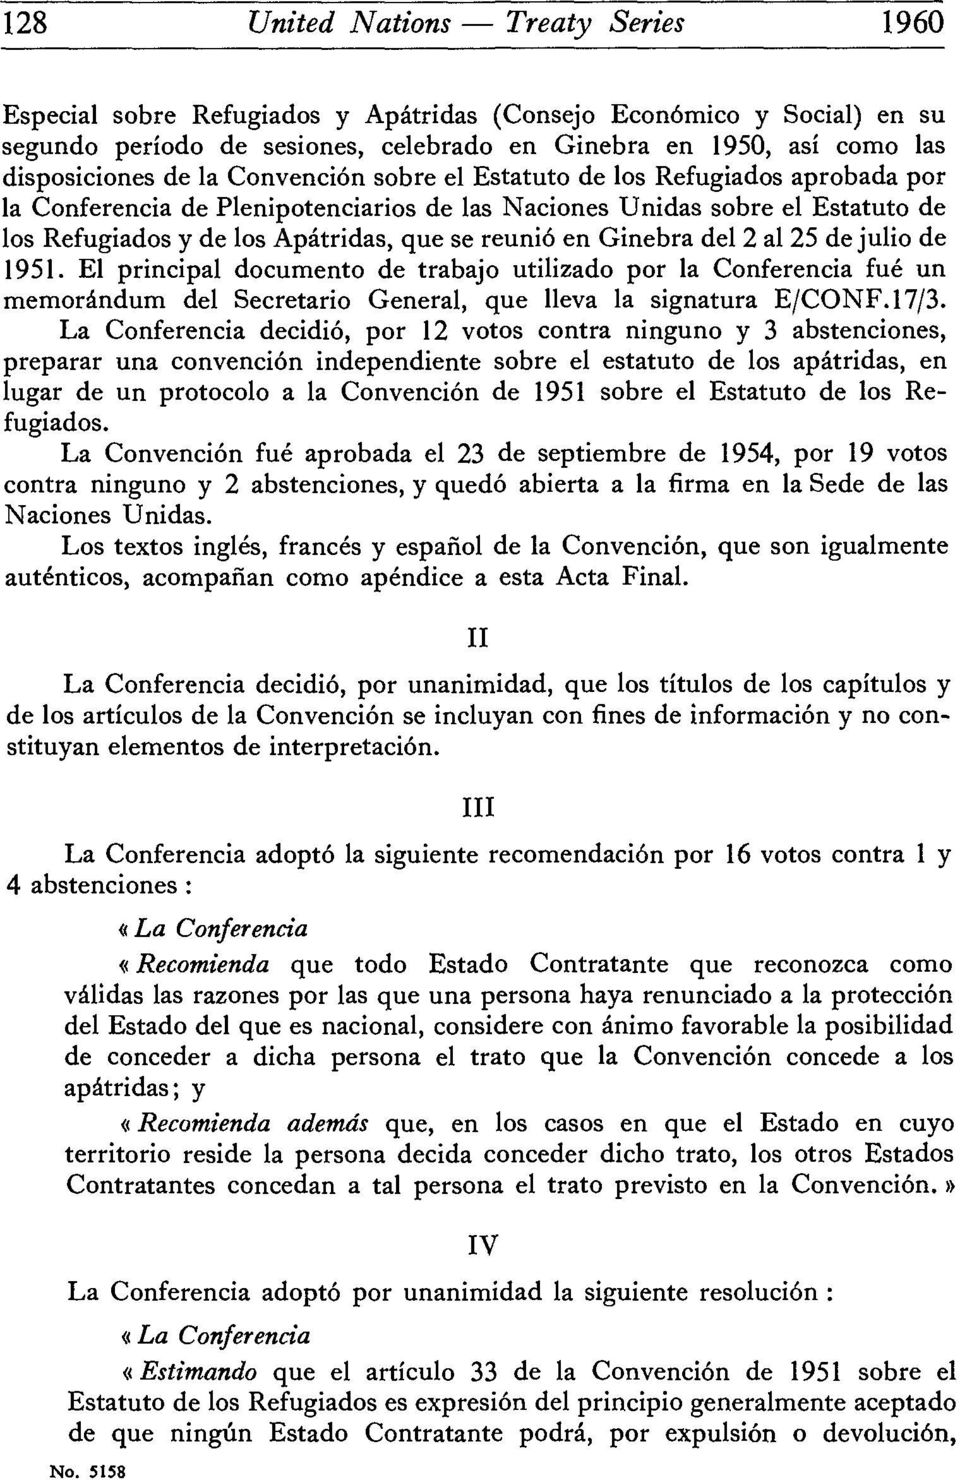 Ginebra del 2 al 25 de julio de 1951. El principal documento de trabajo utilizado por la Conferencia fué un memorandum del Secretario General, que lleva la signatura E/CONF.17/3.